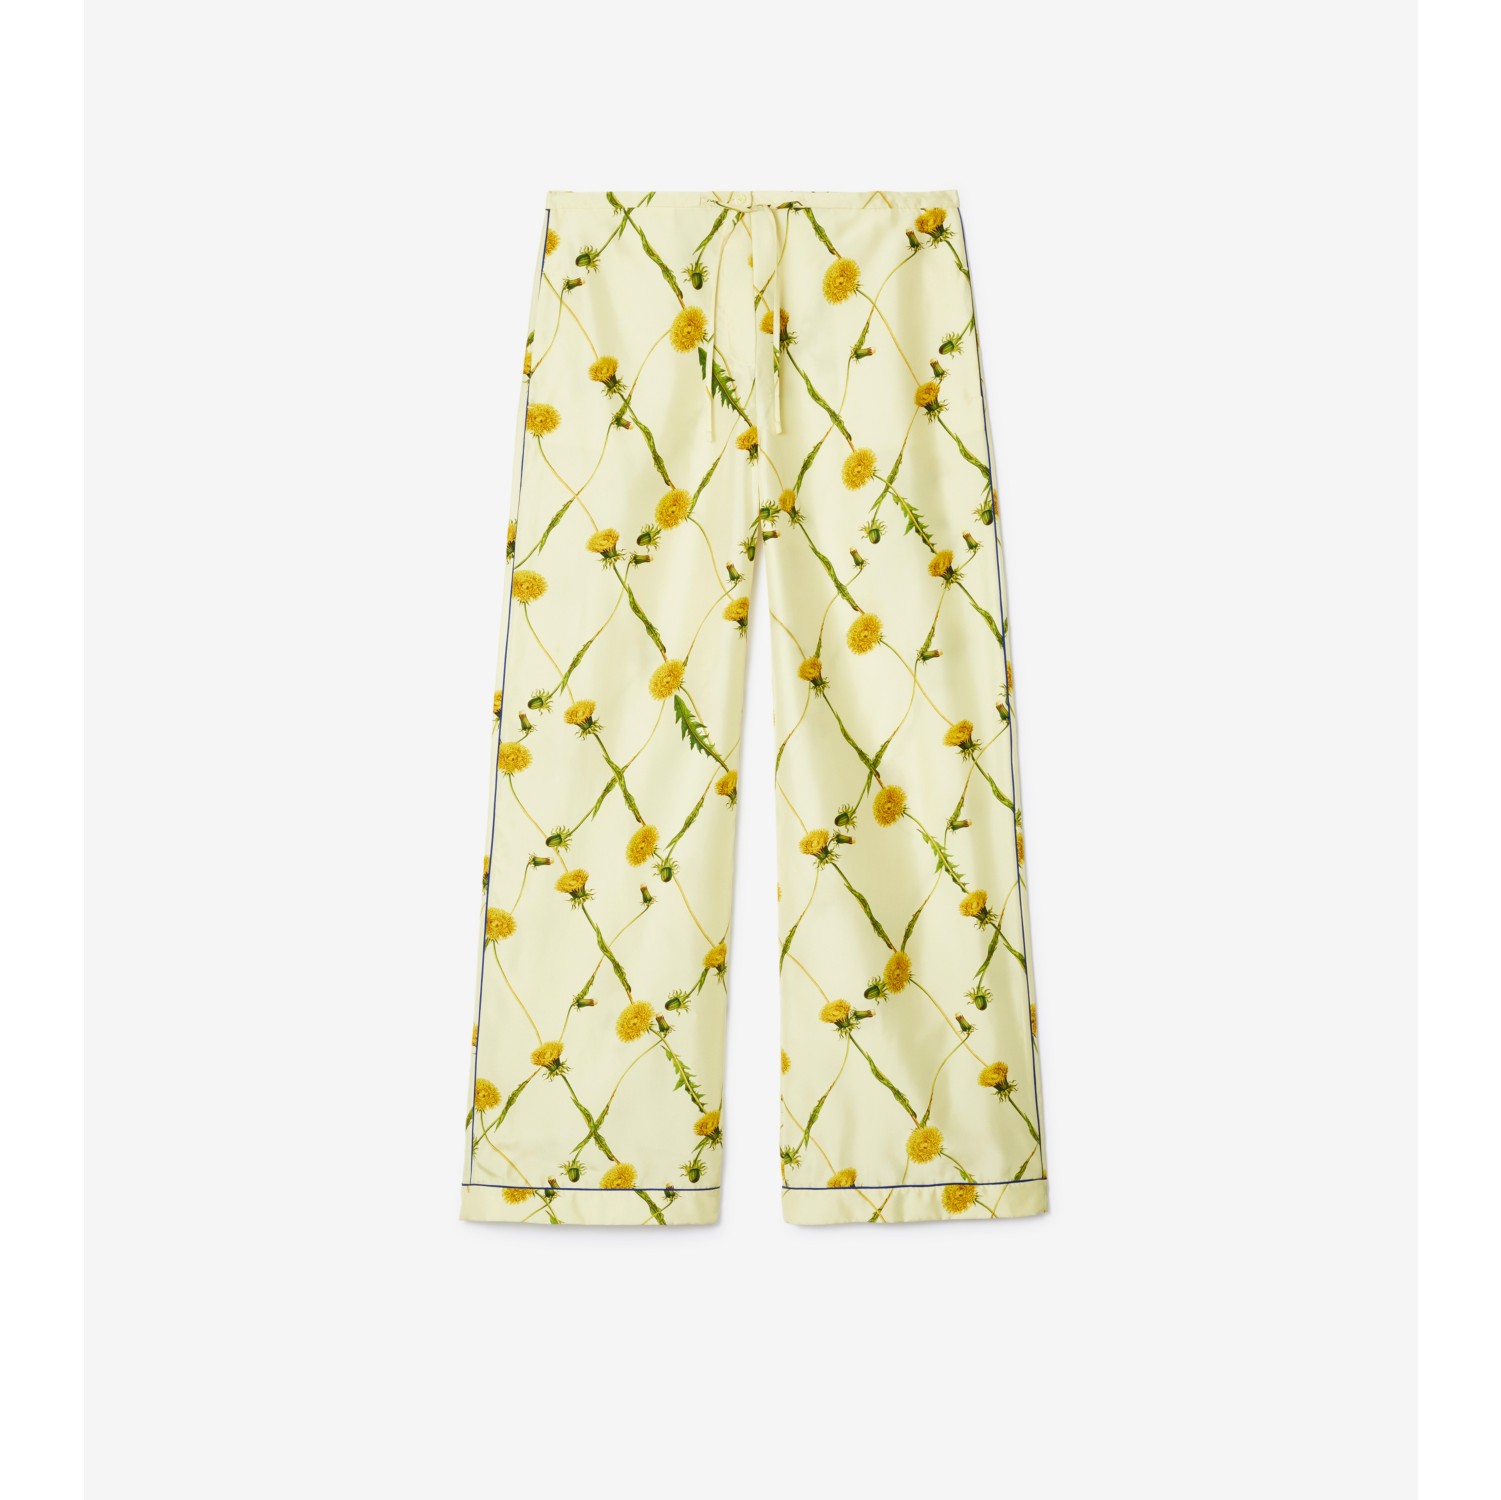 Burberry Sleepwear Pants - Bloomingdale's